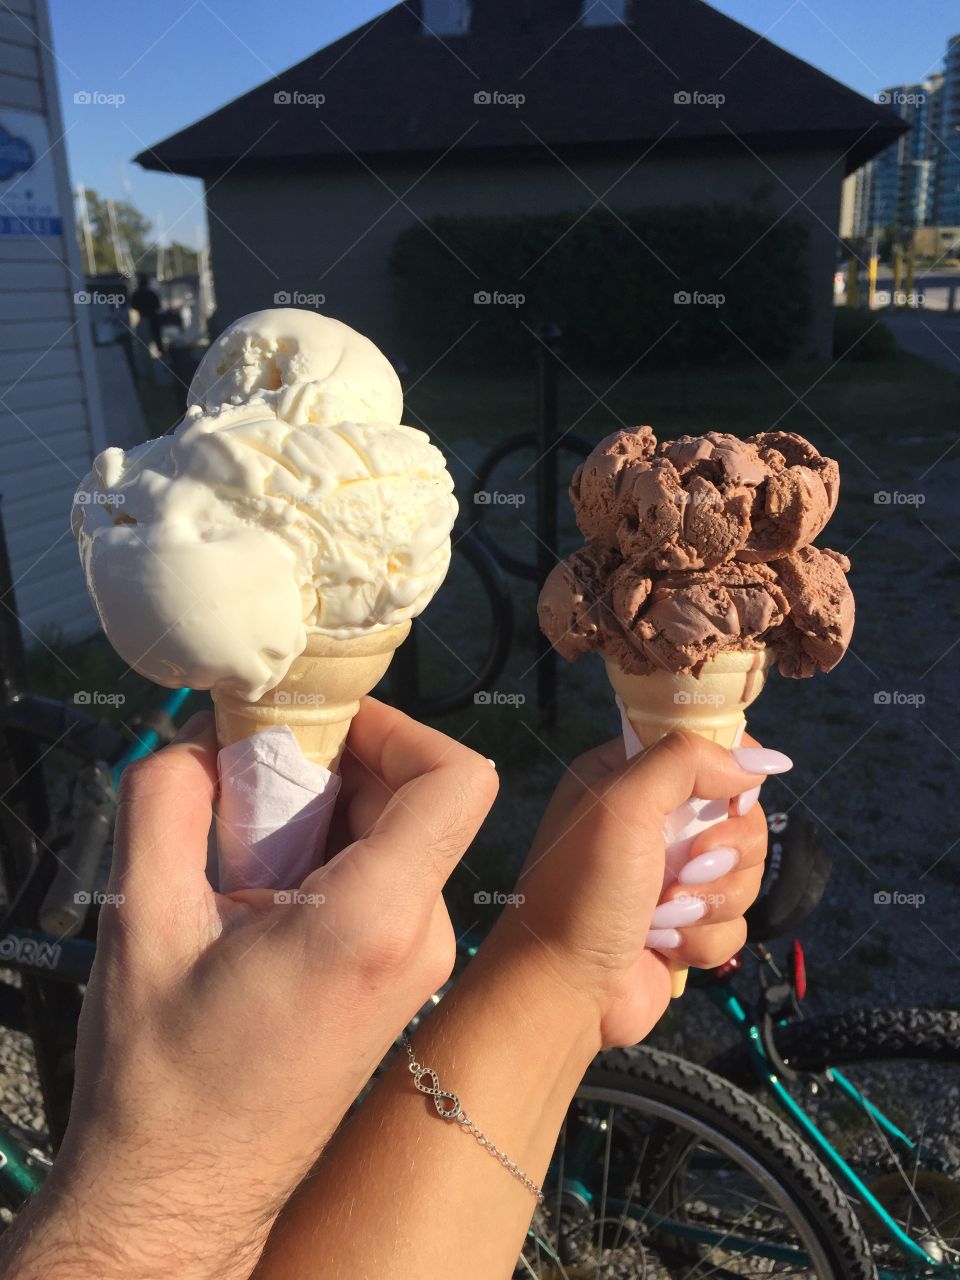 Ice cream cones always